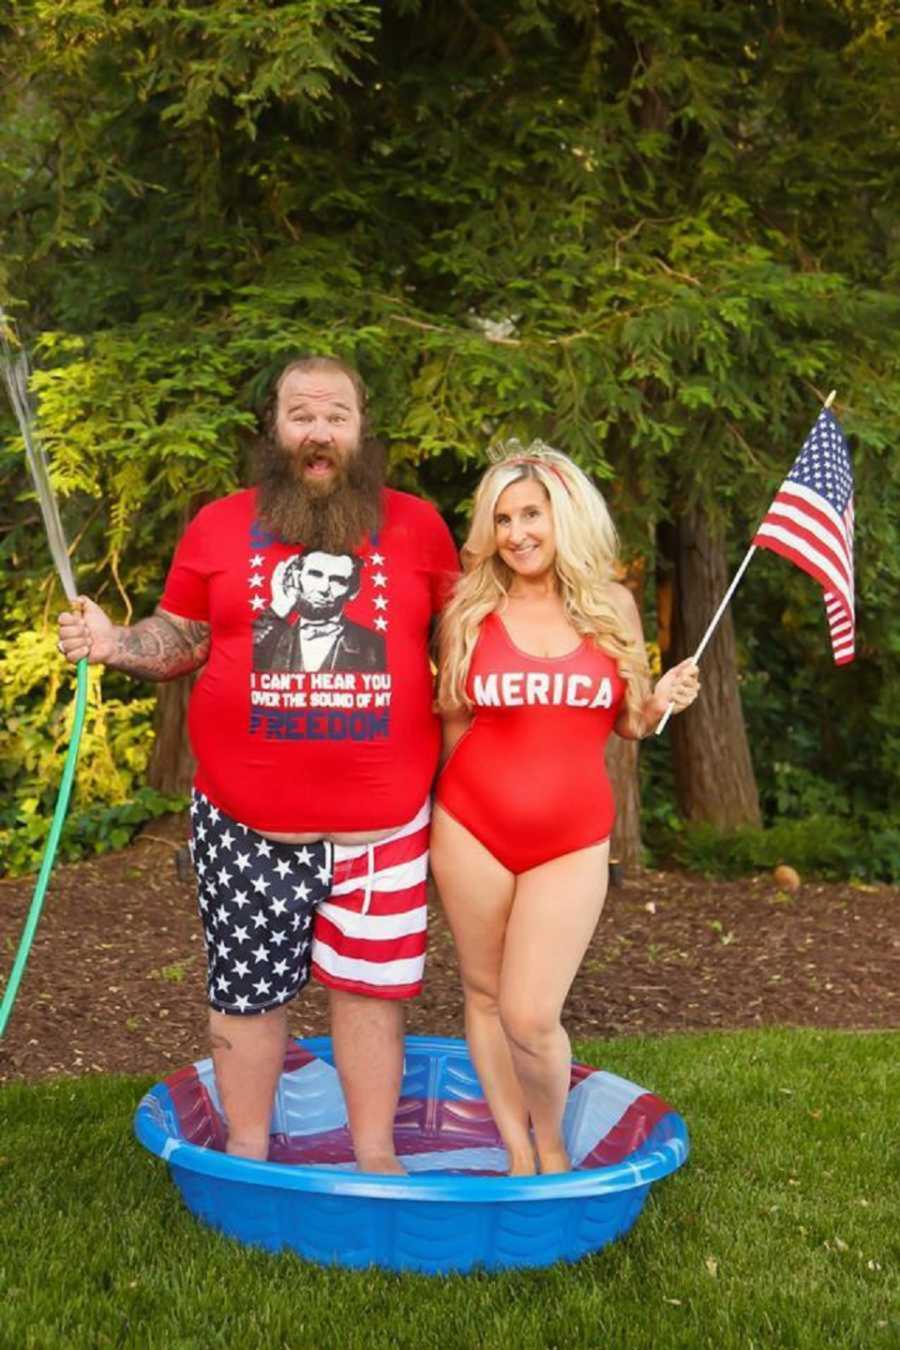 Patriotic couple smiling in kiddie pool holding American flags